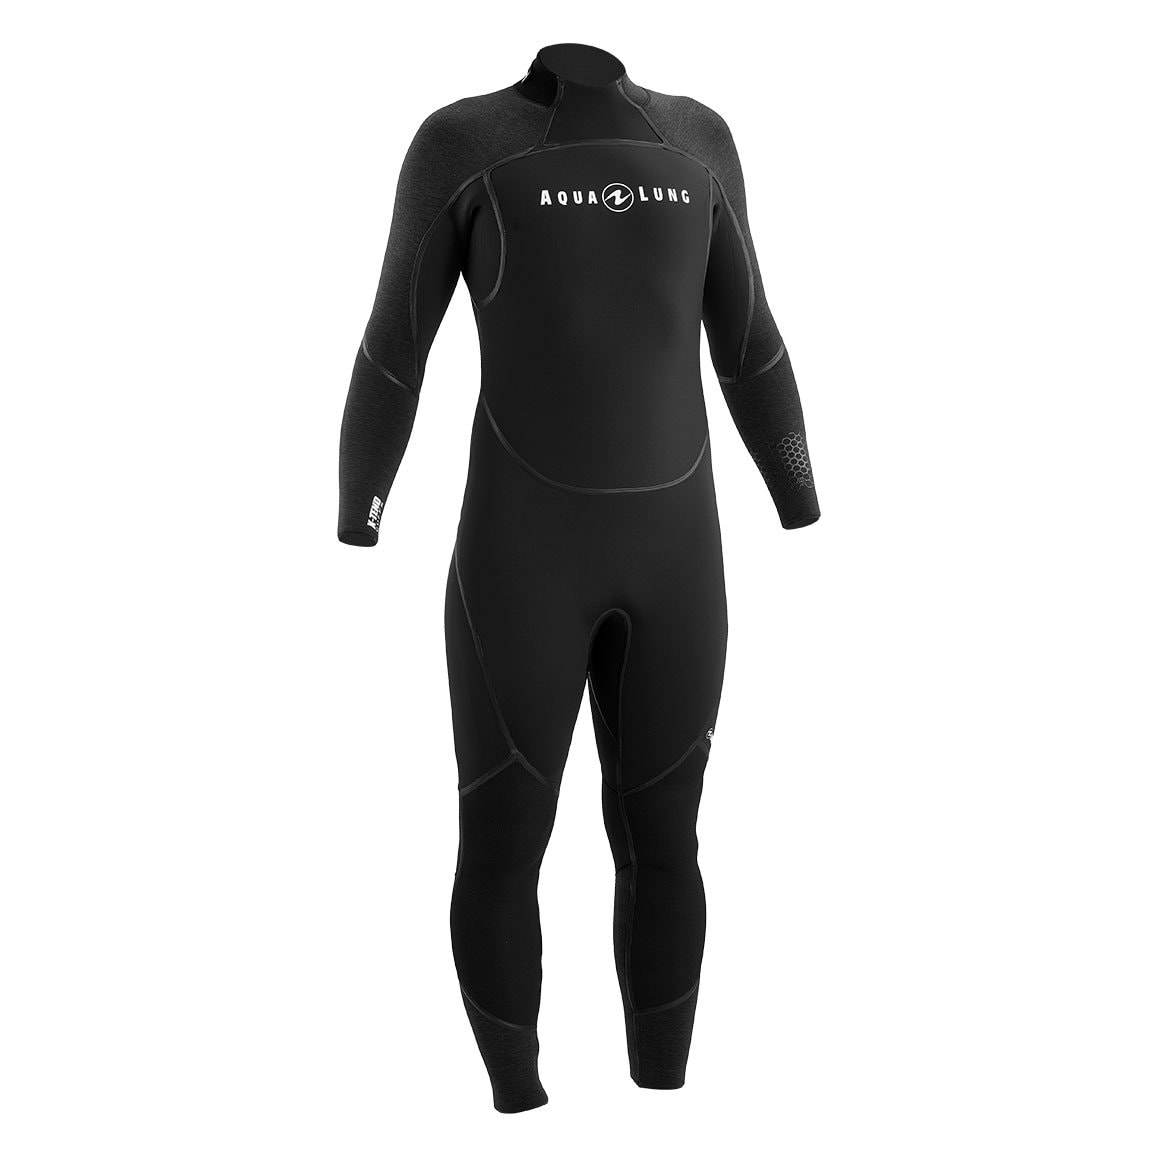 Aqualung Aquaflex 5mm Men’s Wetsuit | Scott's Scuba Service